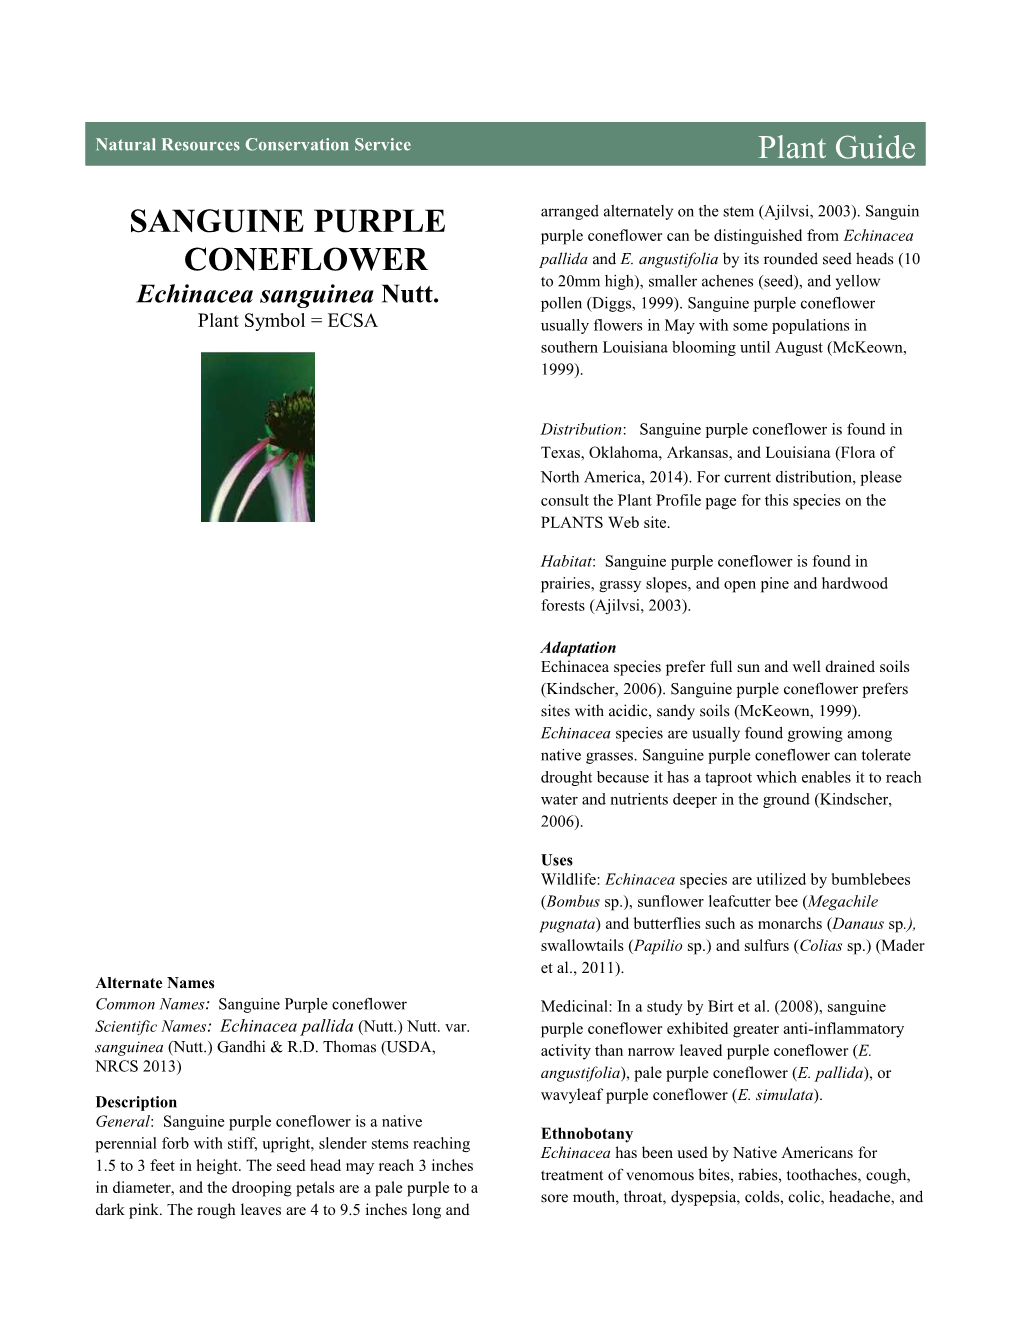 Sanguine Purple Coneflower (Echinacea Sanguinea) Plant Guide